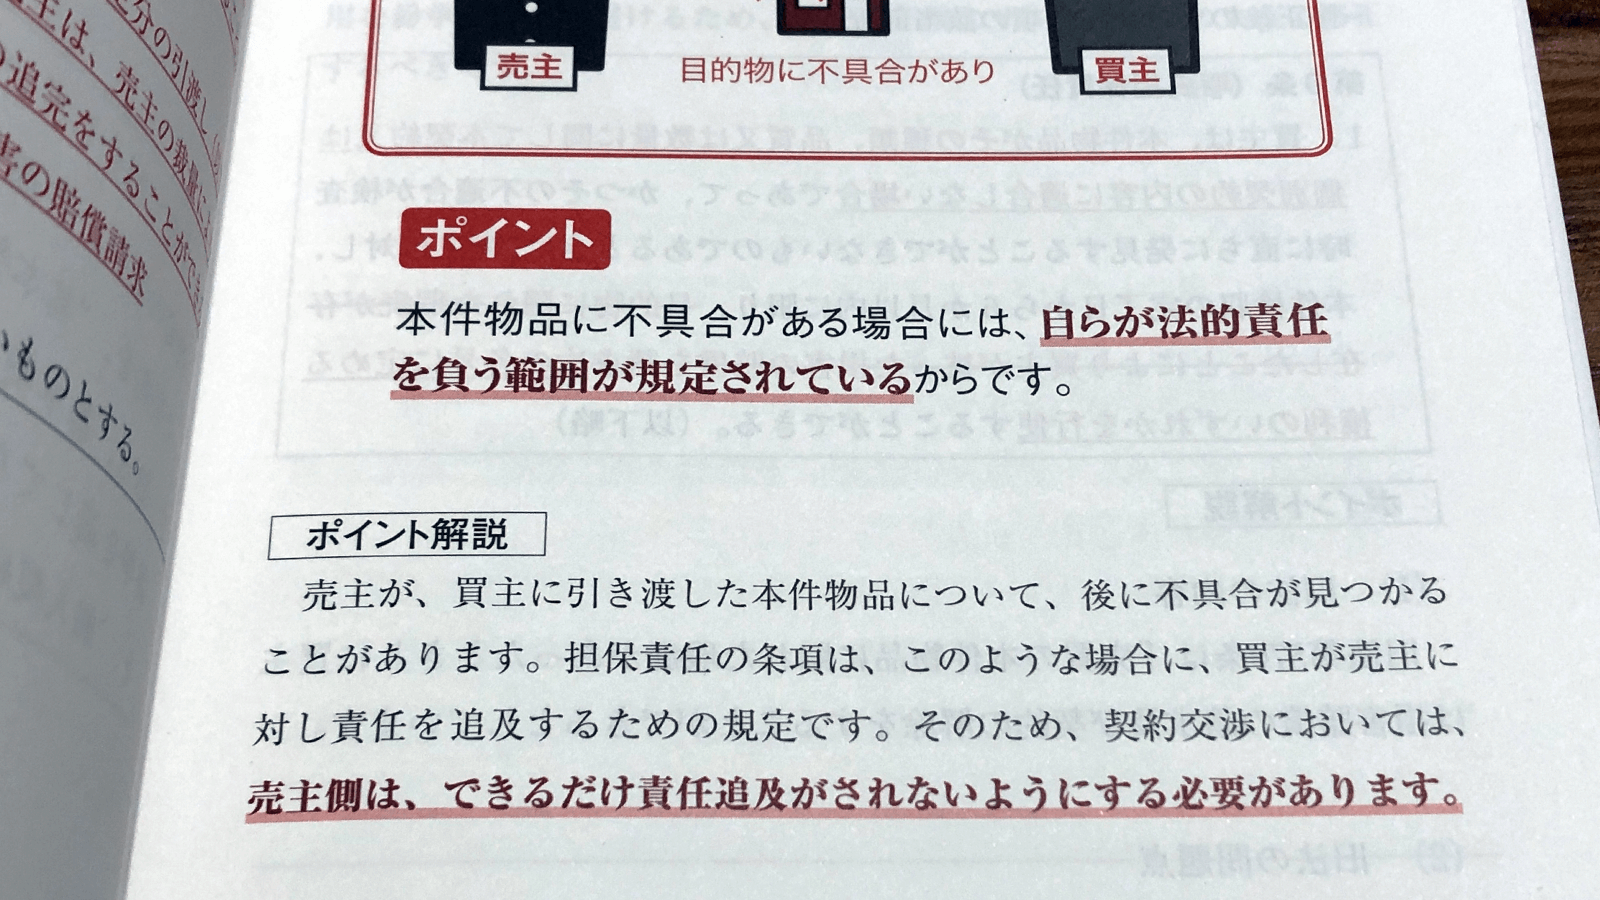 滝琢麿・菅野邑斗『はじめてでもわかる売買契約書』P45